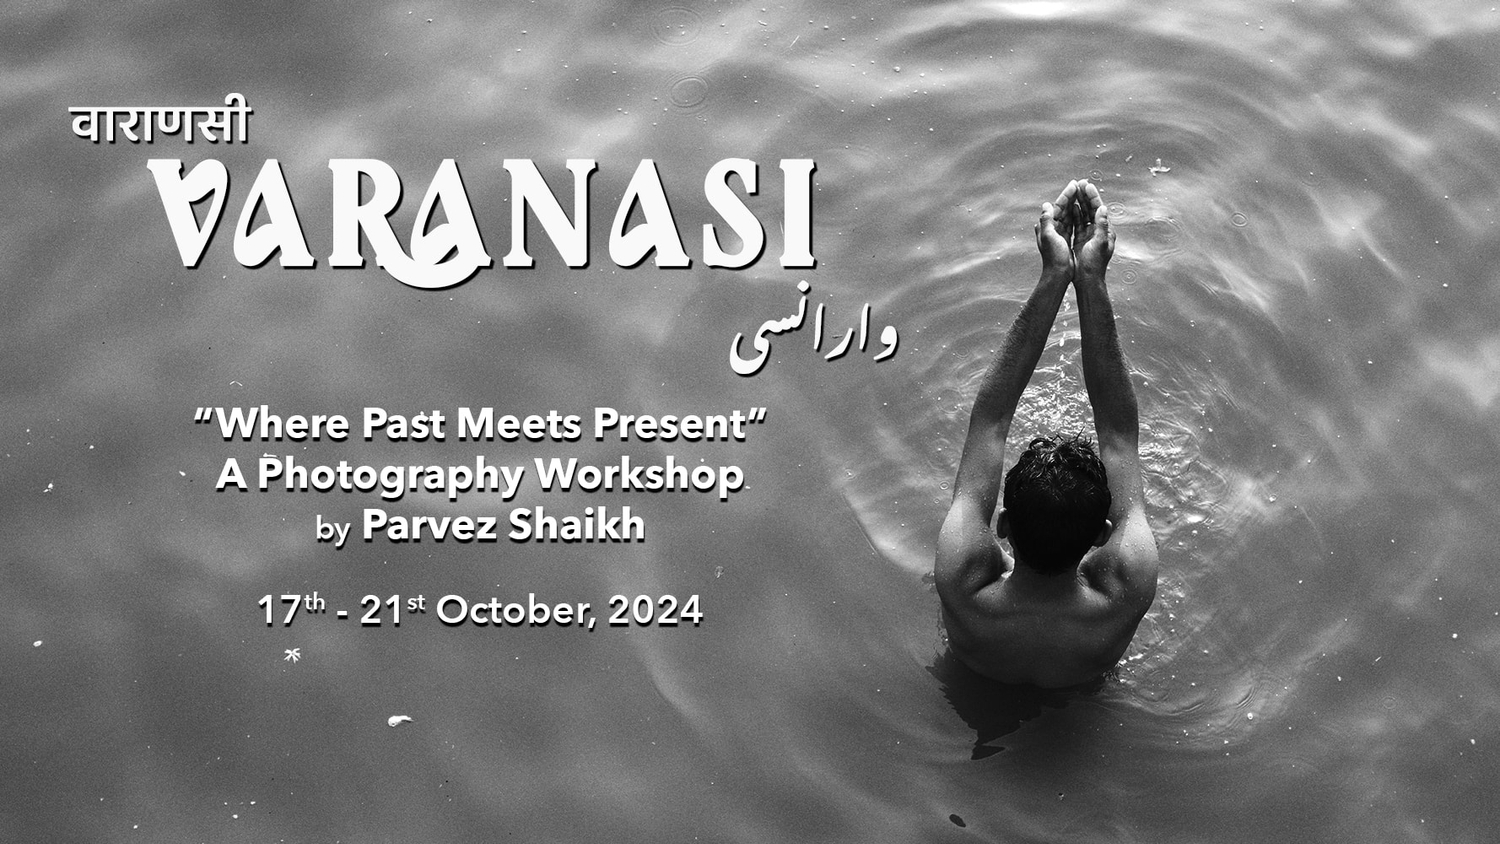 Varanasi Photography Workshop by Parvez Shaikh